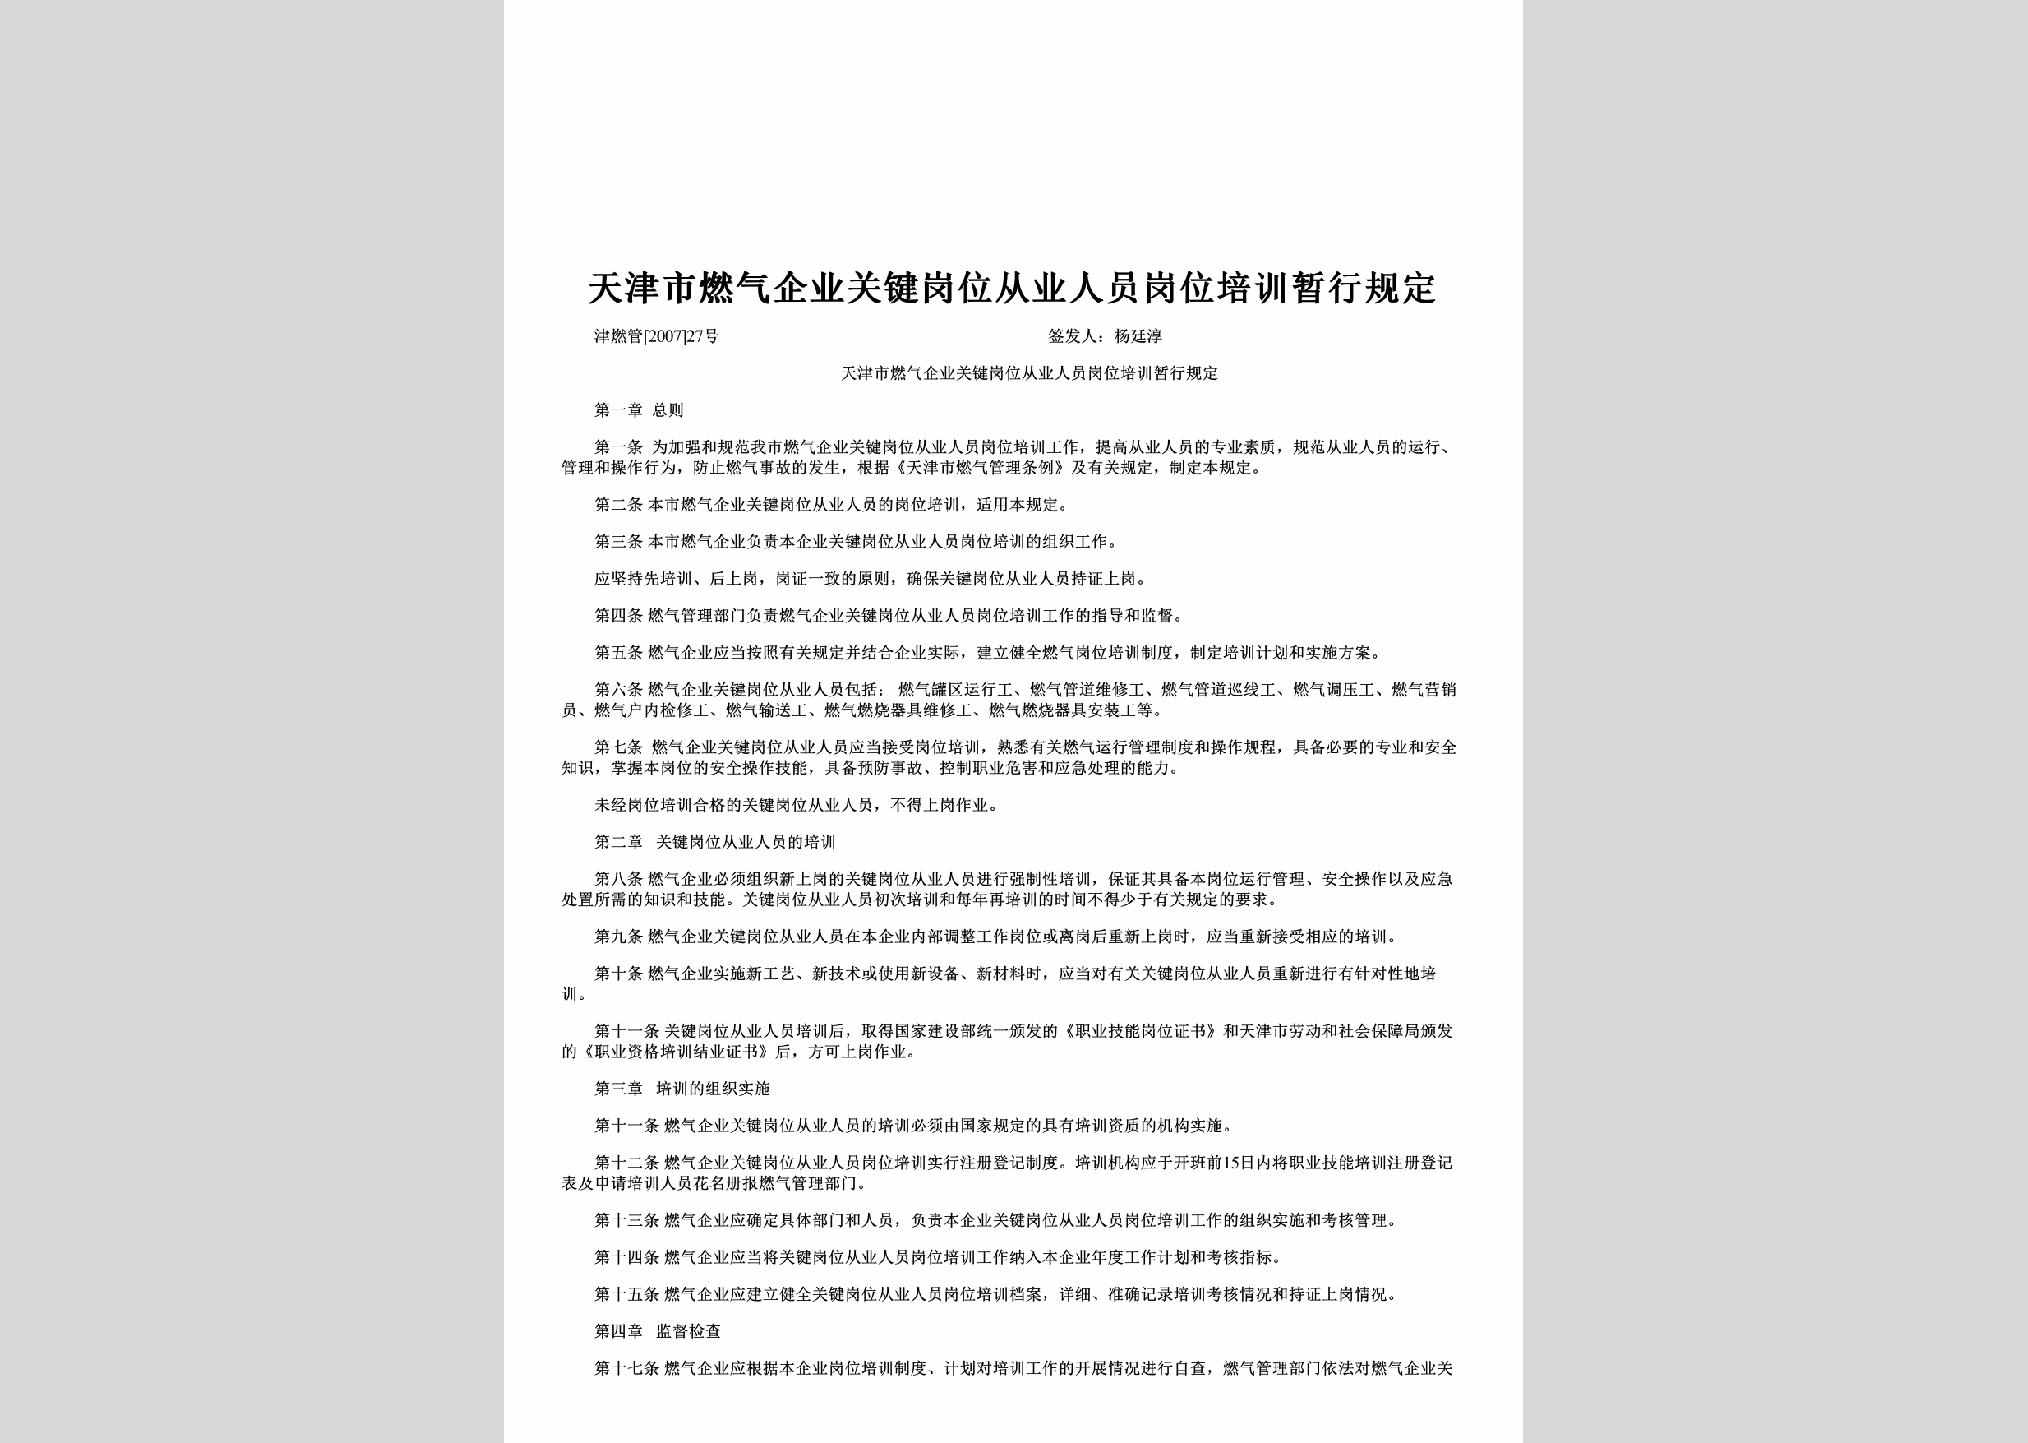 津燃管[2007]27号：天津市燃气企业关键岗位从业人员岗位培训暂行规定